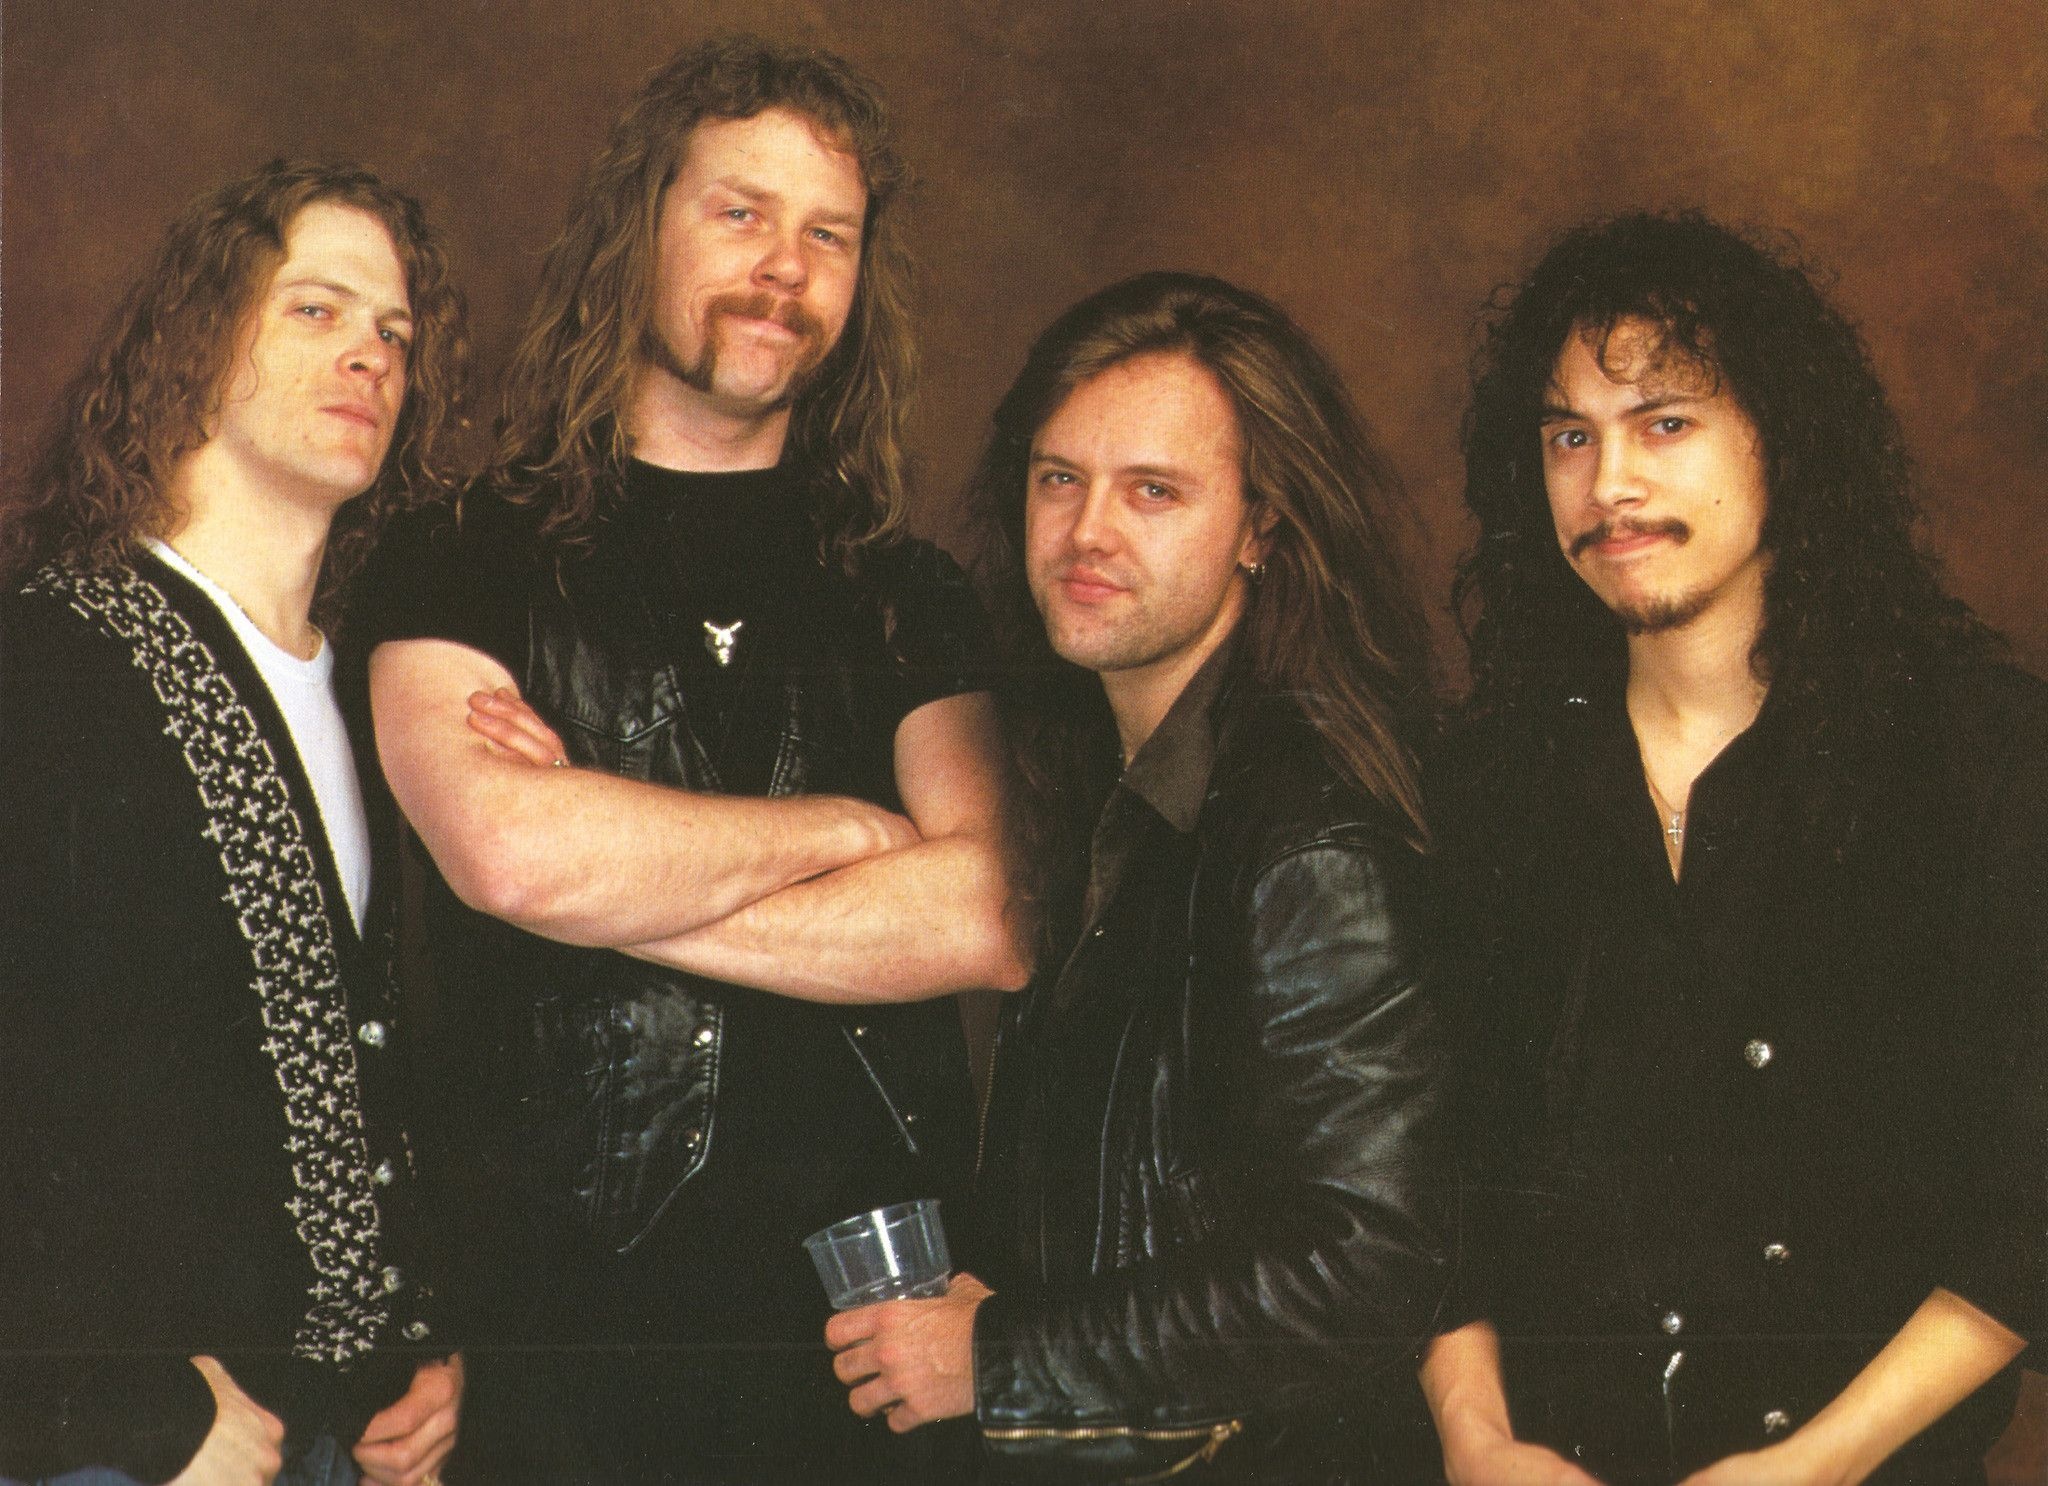 James Hetfield, HD wallpaper, Metallica band, Jason Newsted, 2050x1490 HD Desktop